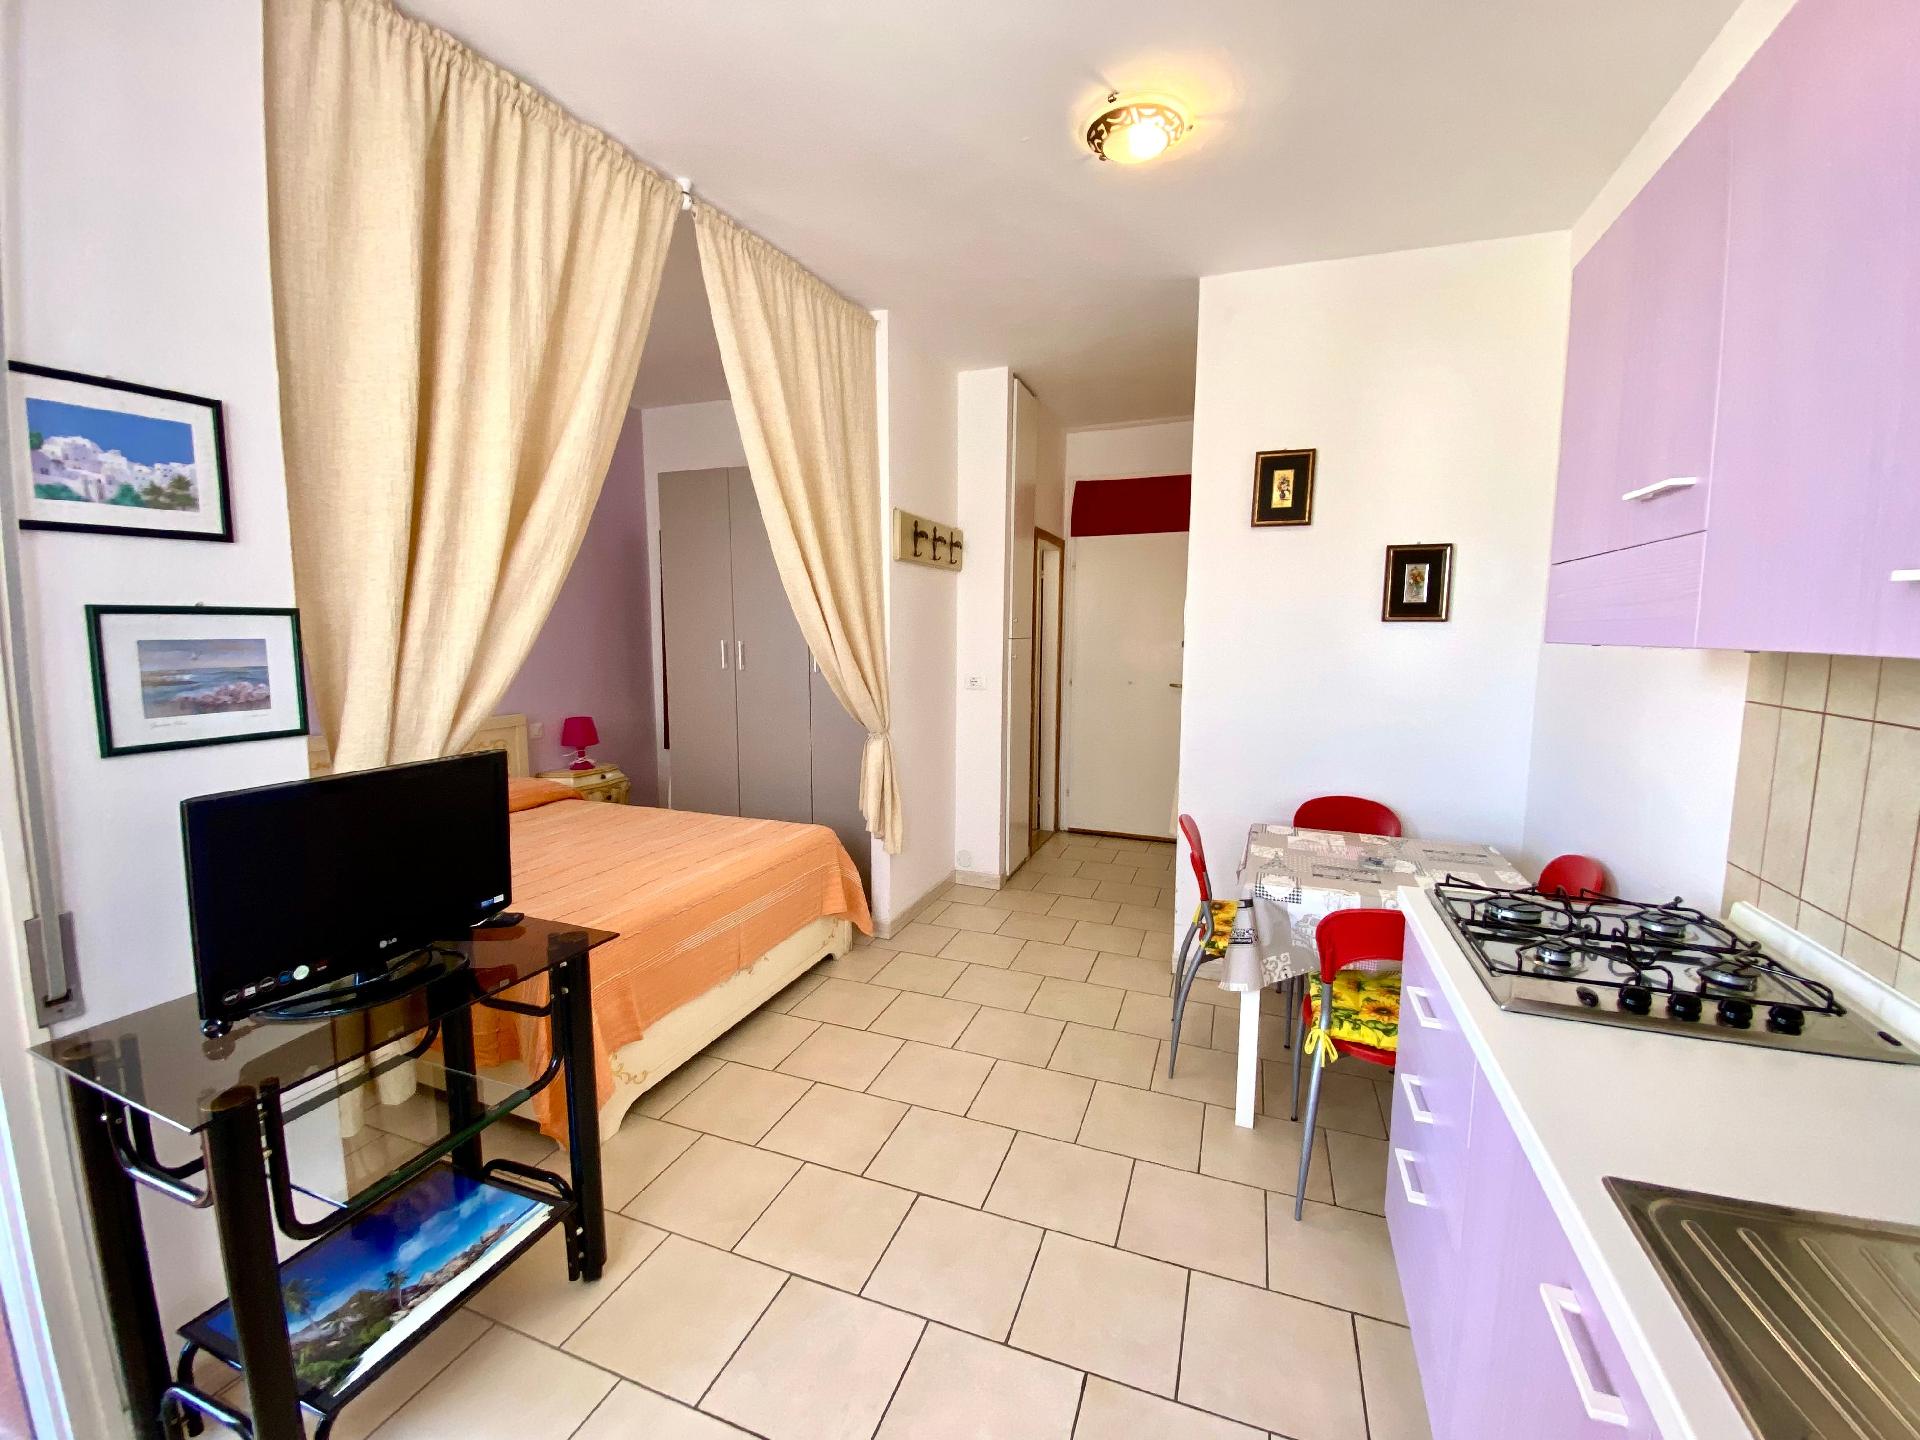 Appartement in Lido Delle Nazioni mit Kleinem Balk Ferienwohnung in Italien